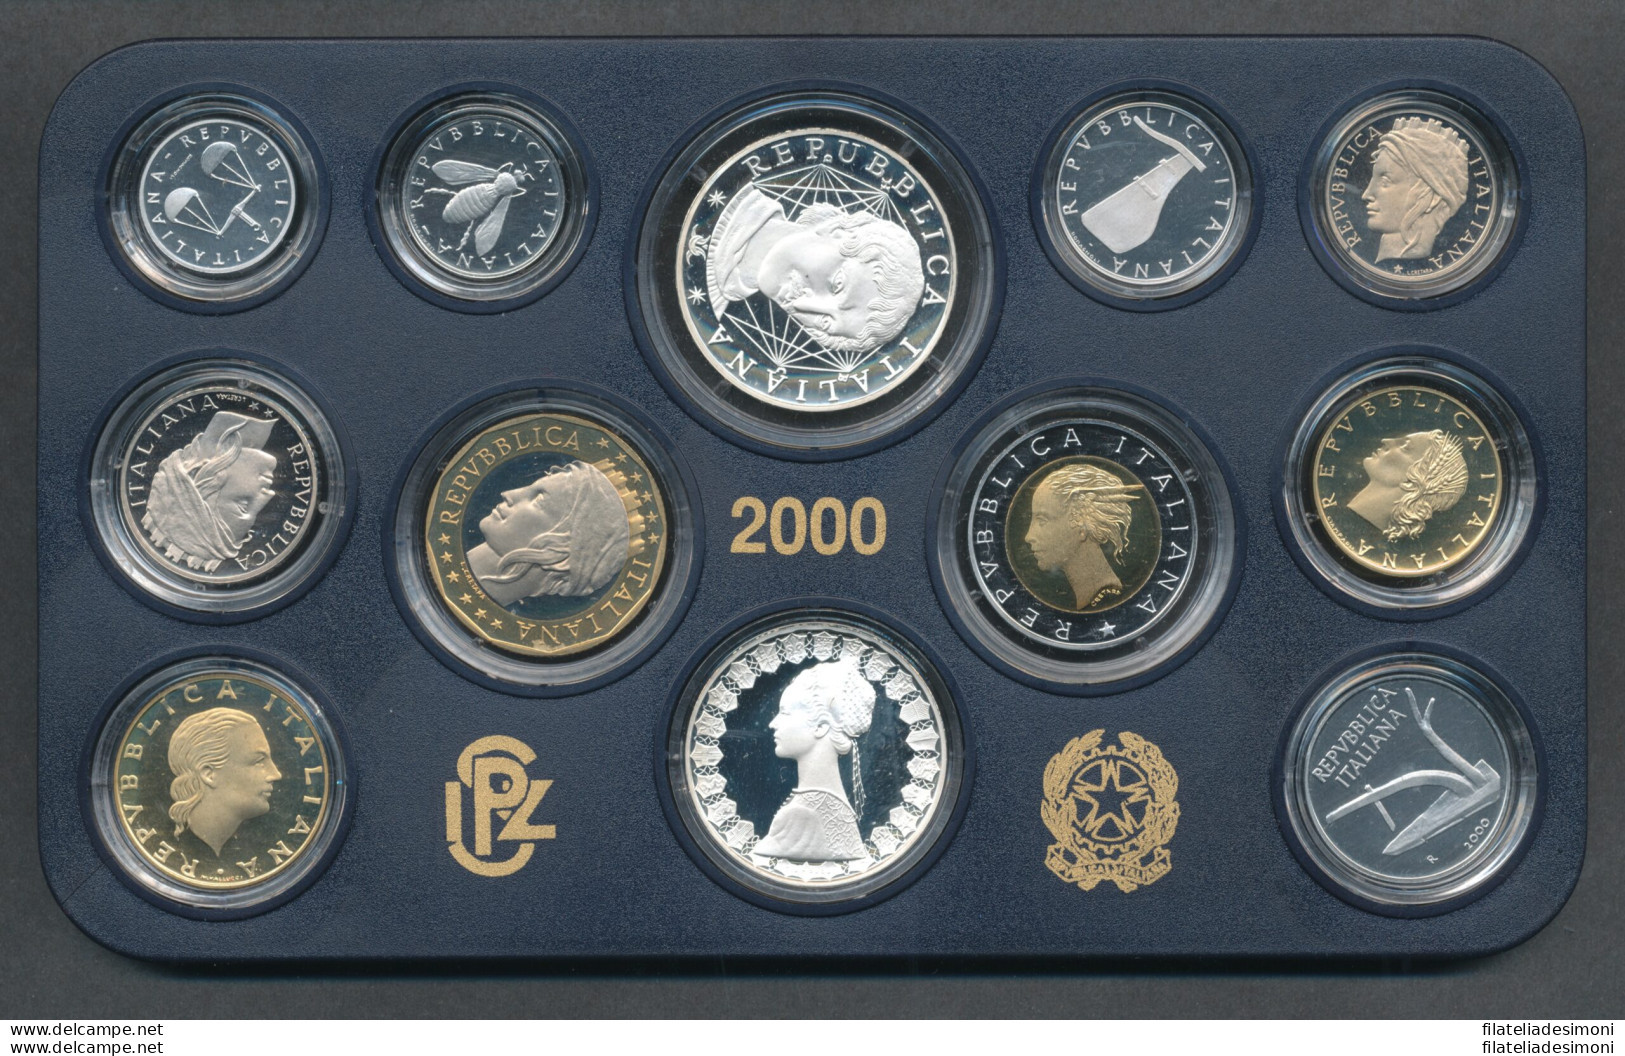 2000 Italia - Repubblica - Monetazione Divisionale Annata Completa FS - Jahressets & Polierte Platten